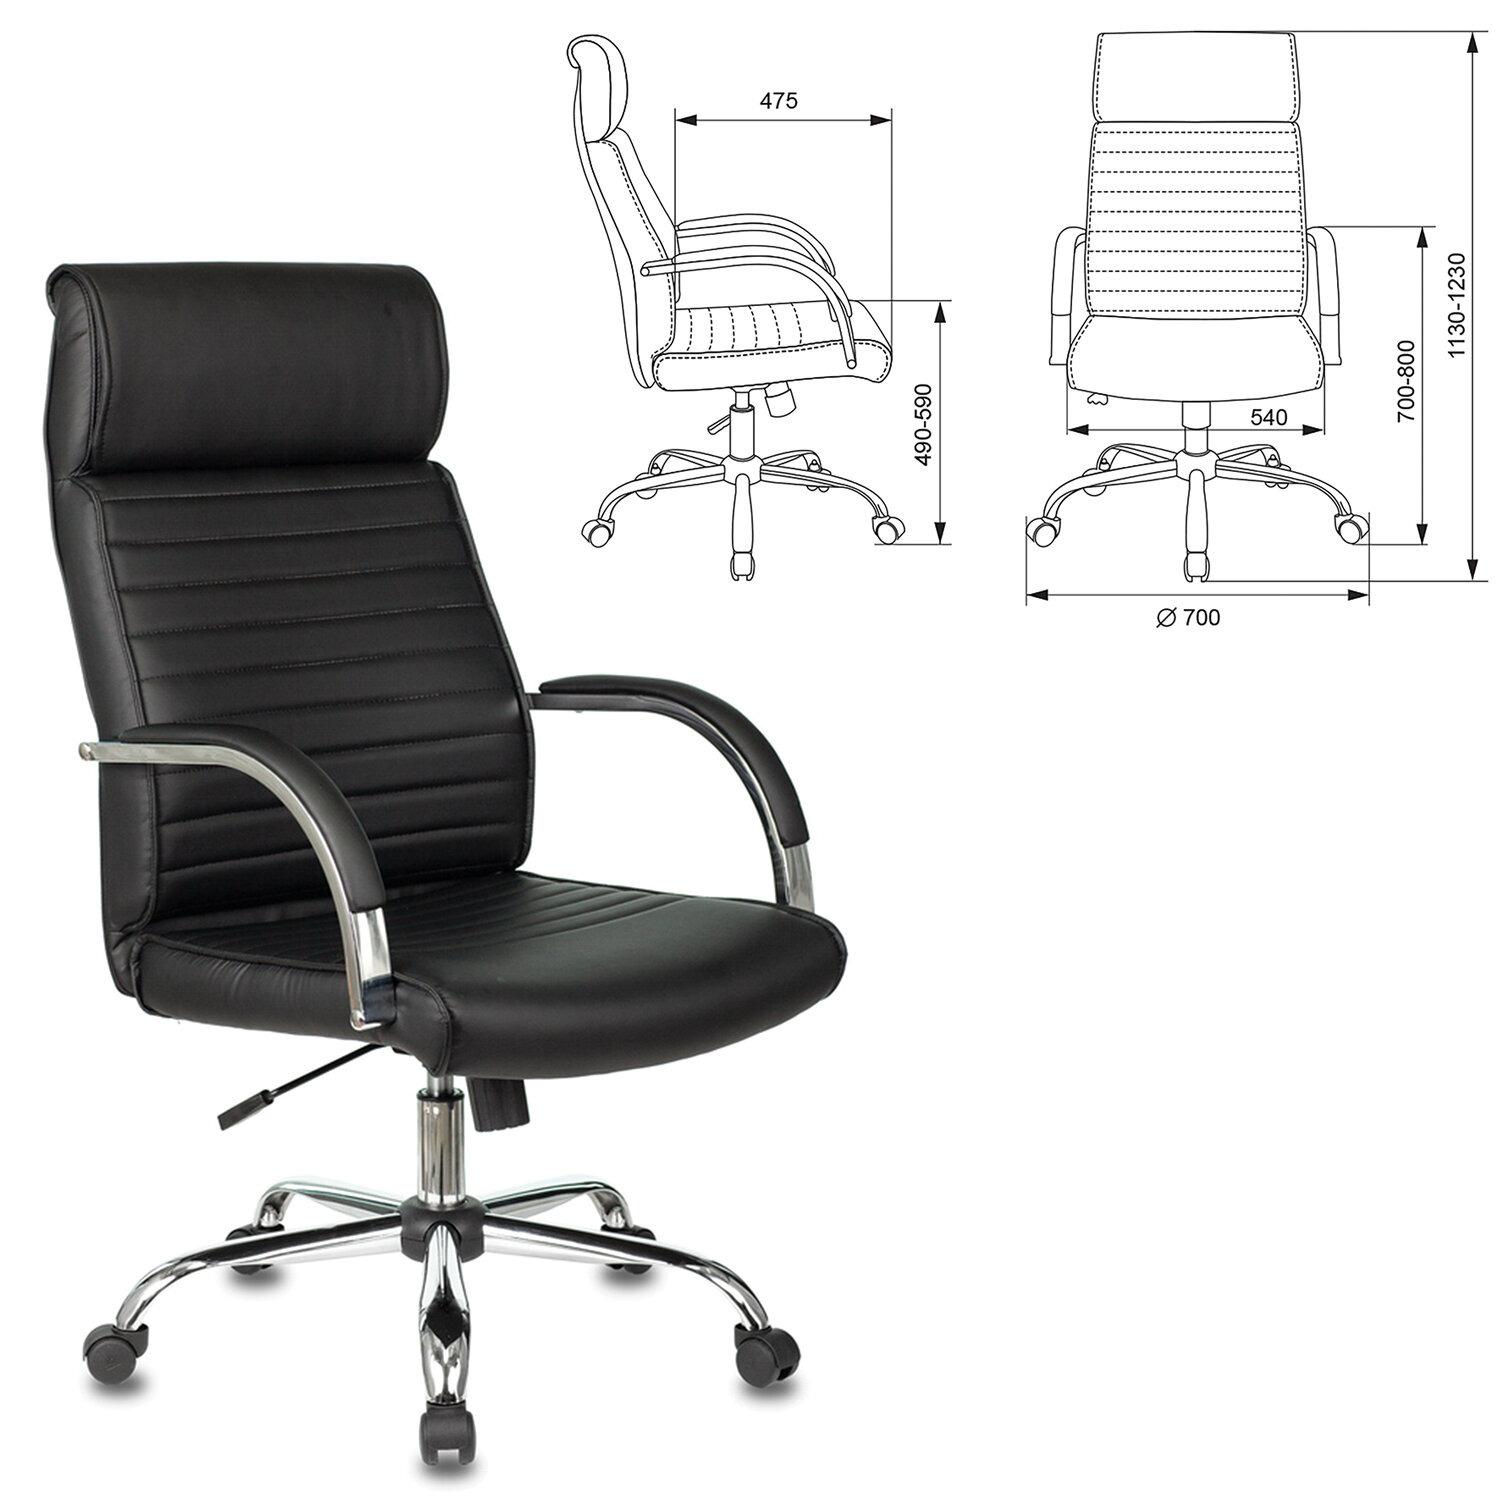 Офисное кресло йорк хром экокожа черная 970x680x510